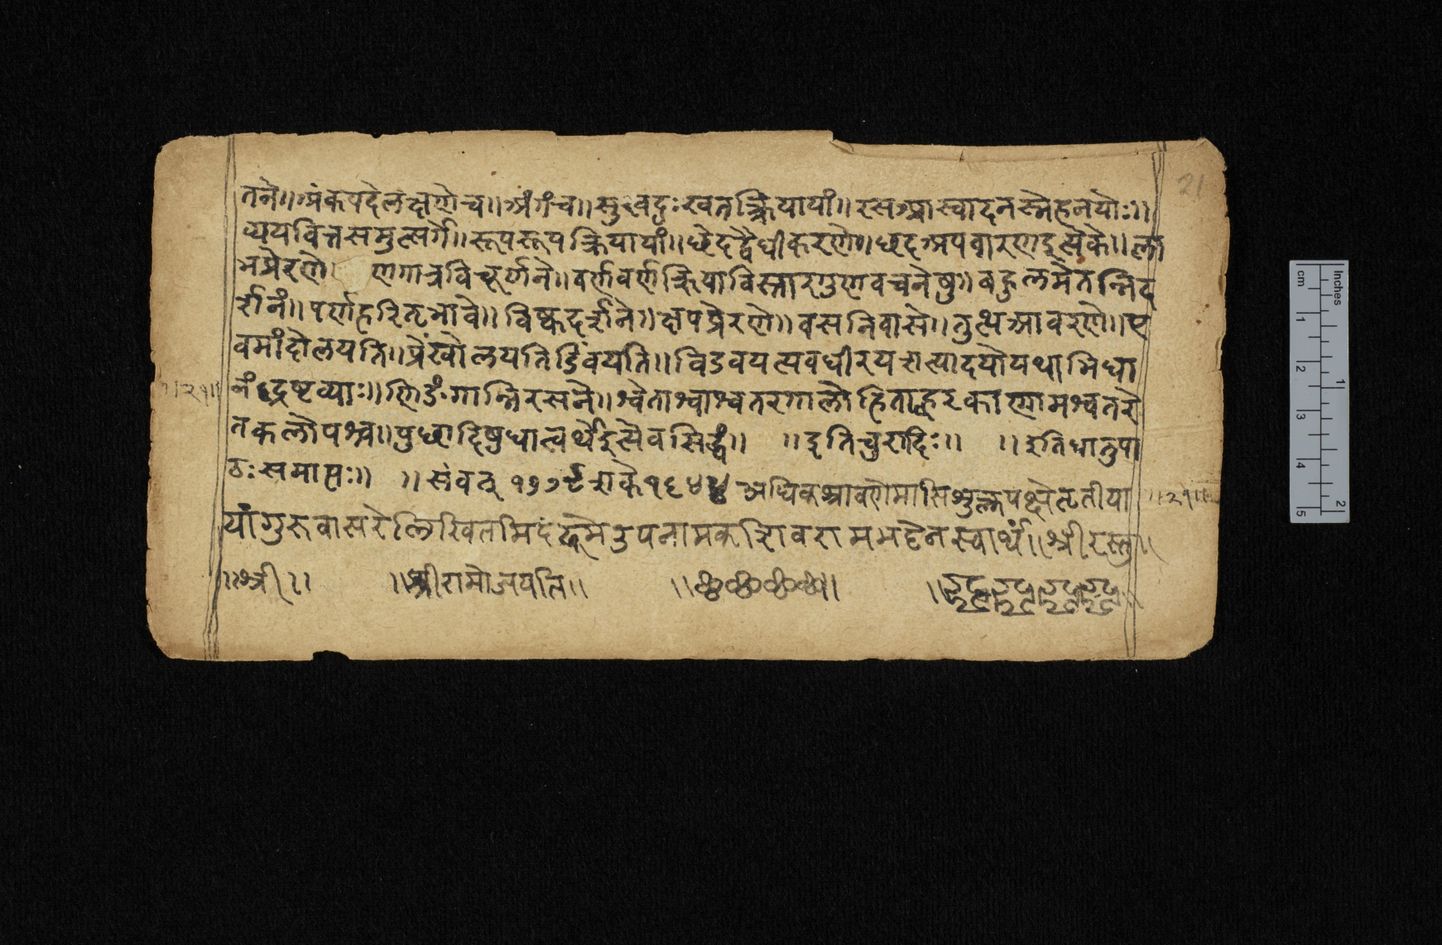 Cambridge ülikoolile kuuluv lehekülg  Pāṇini  Dhātupāṭha raamatu 18. sajandi koopiast.